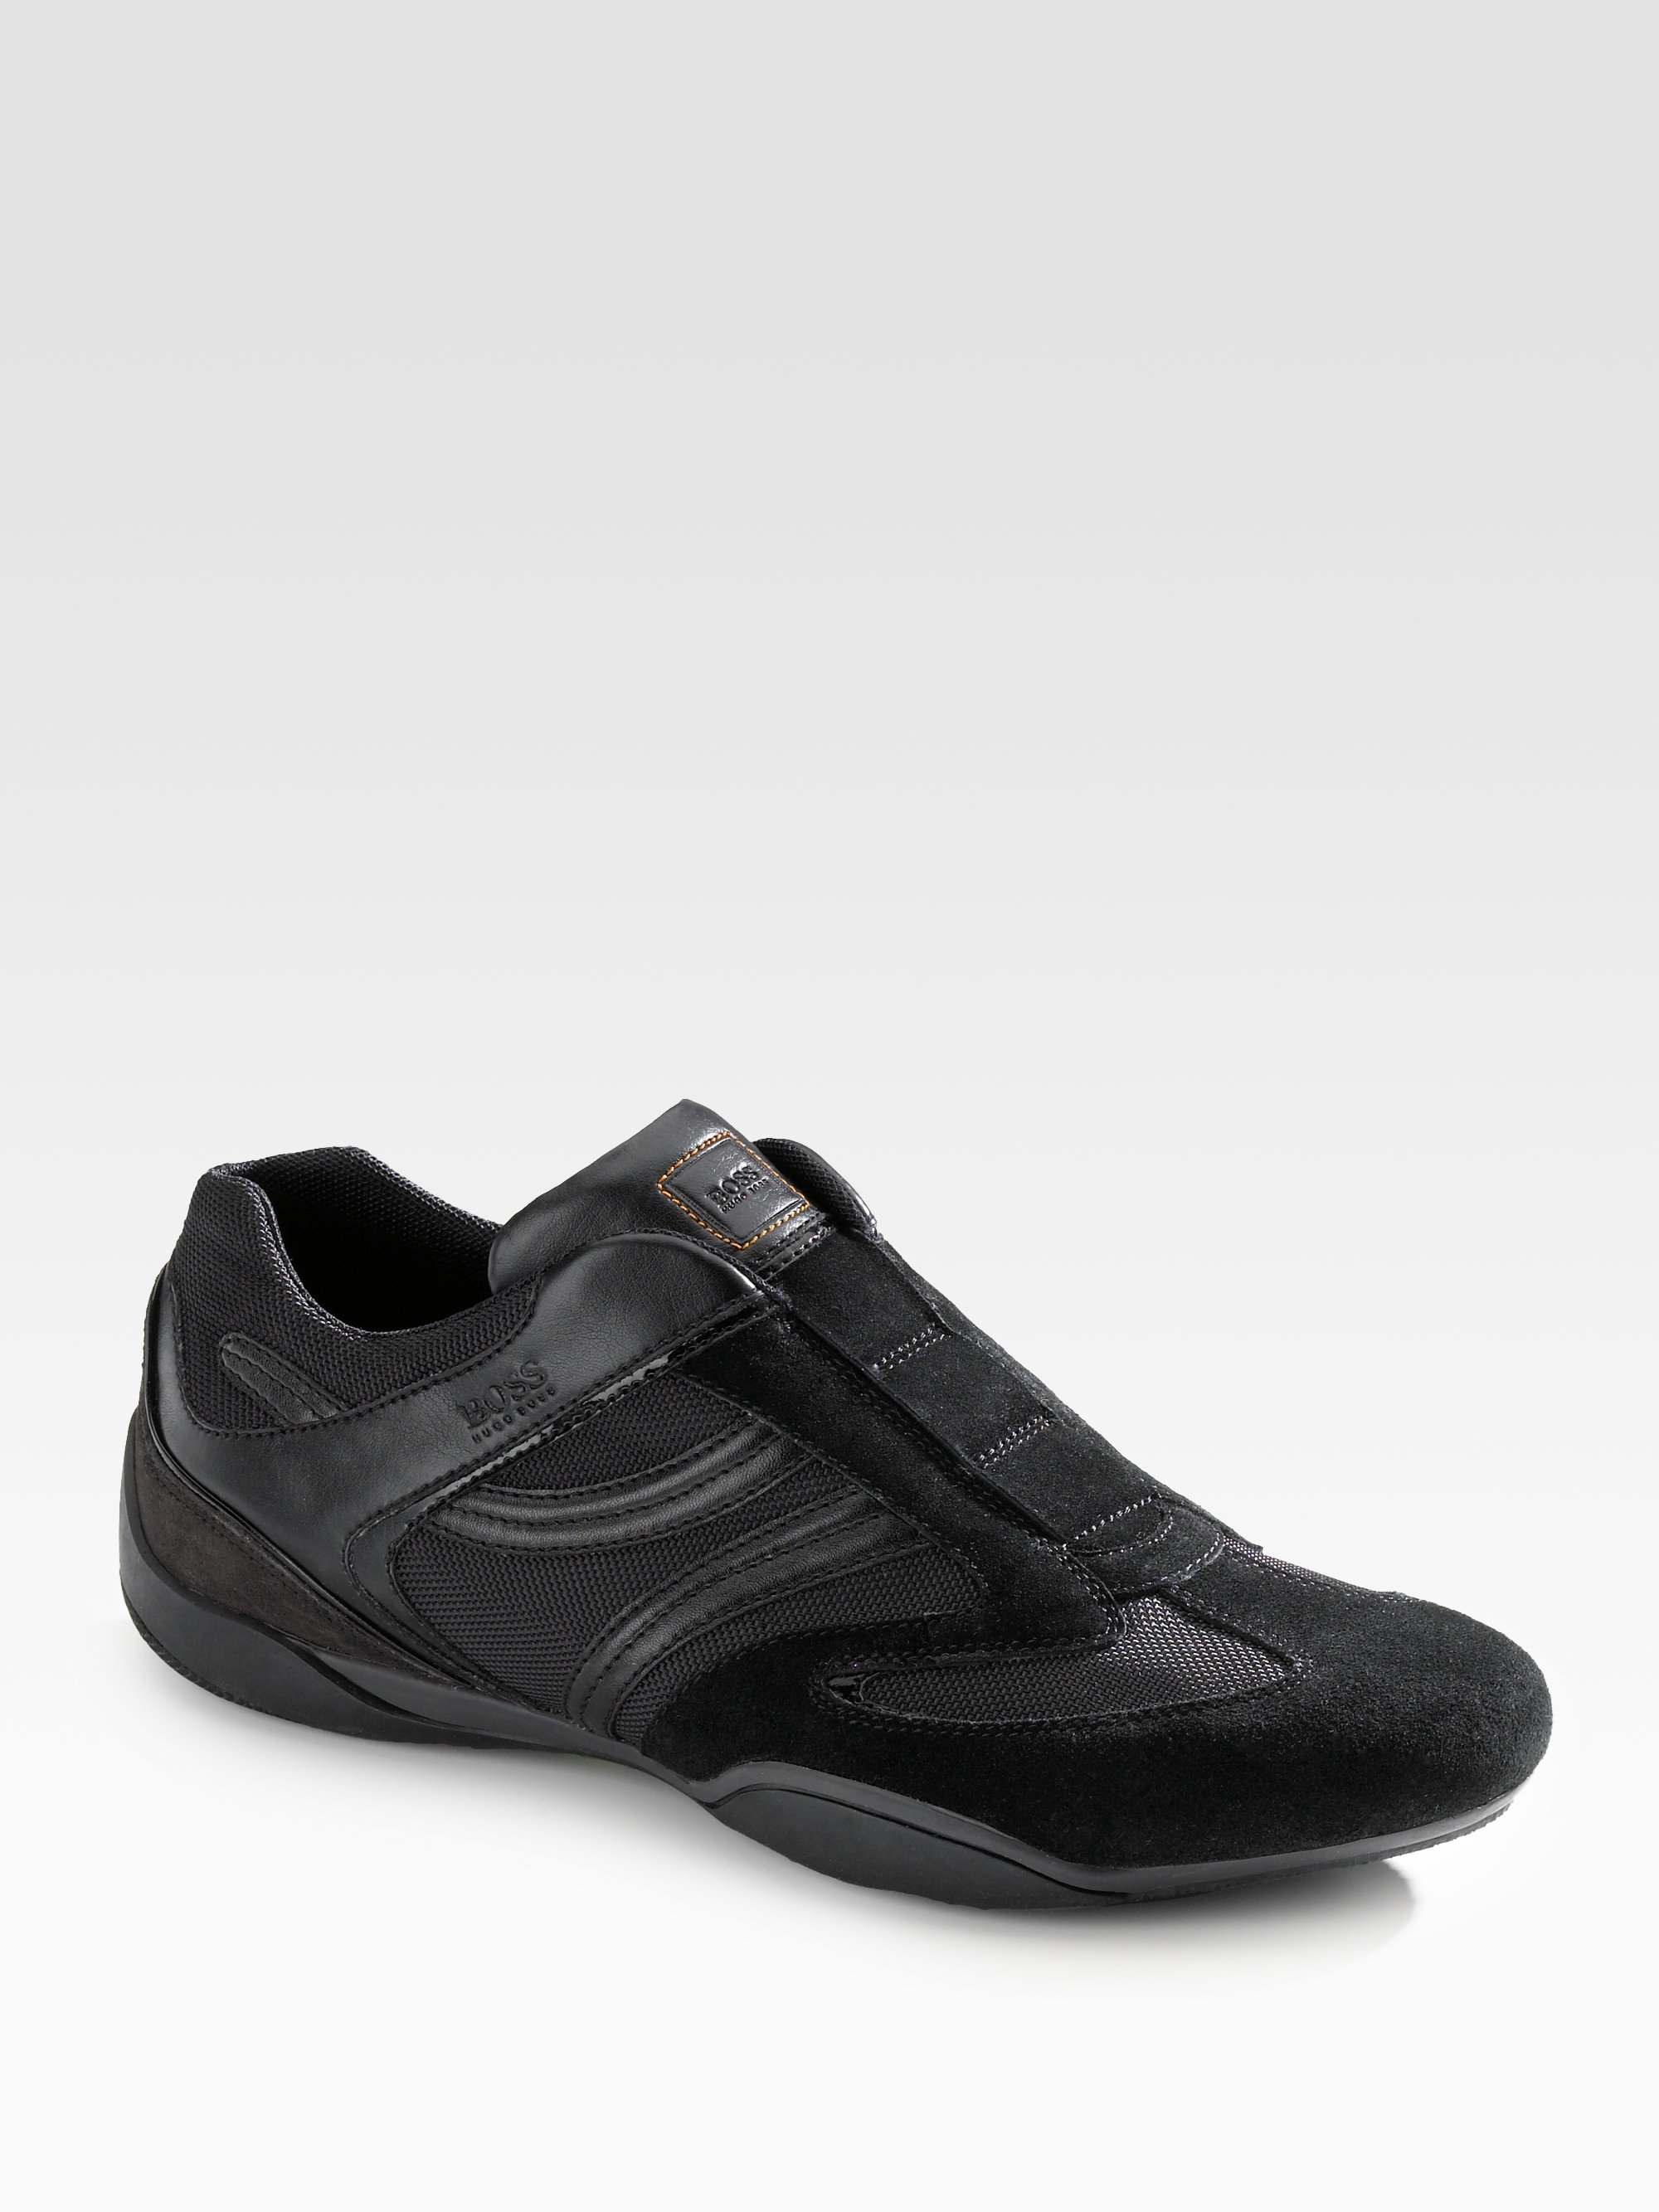 BOSS Orange Slip-on Sneakers in Black for Men | Lyst